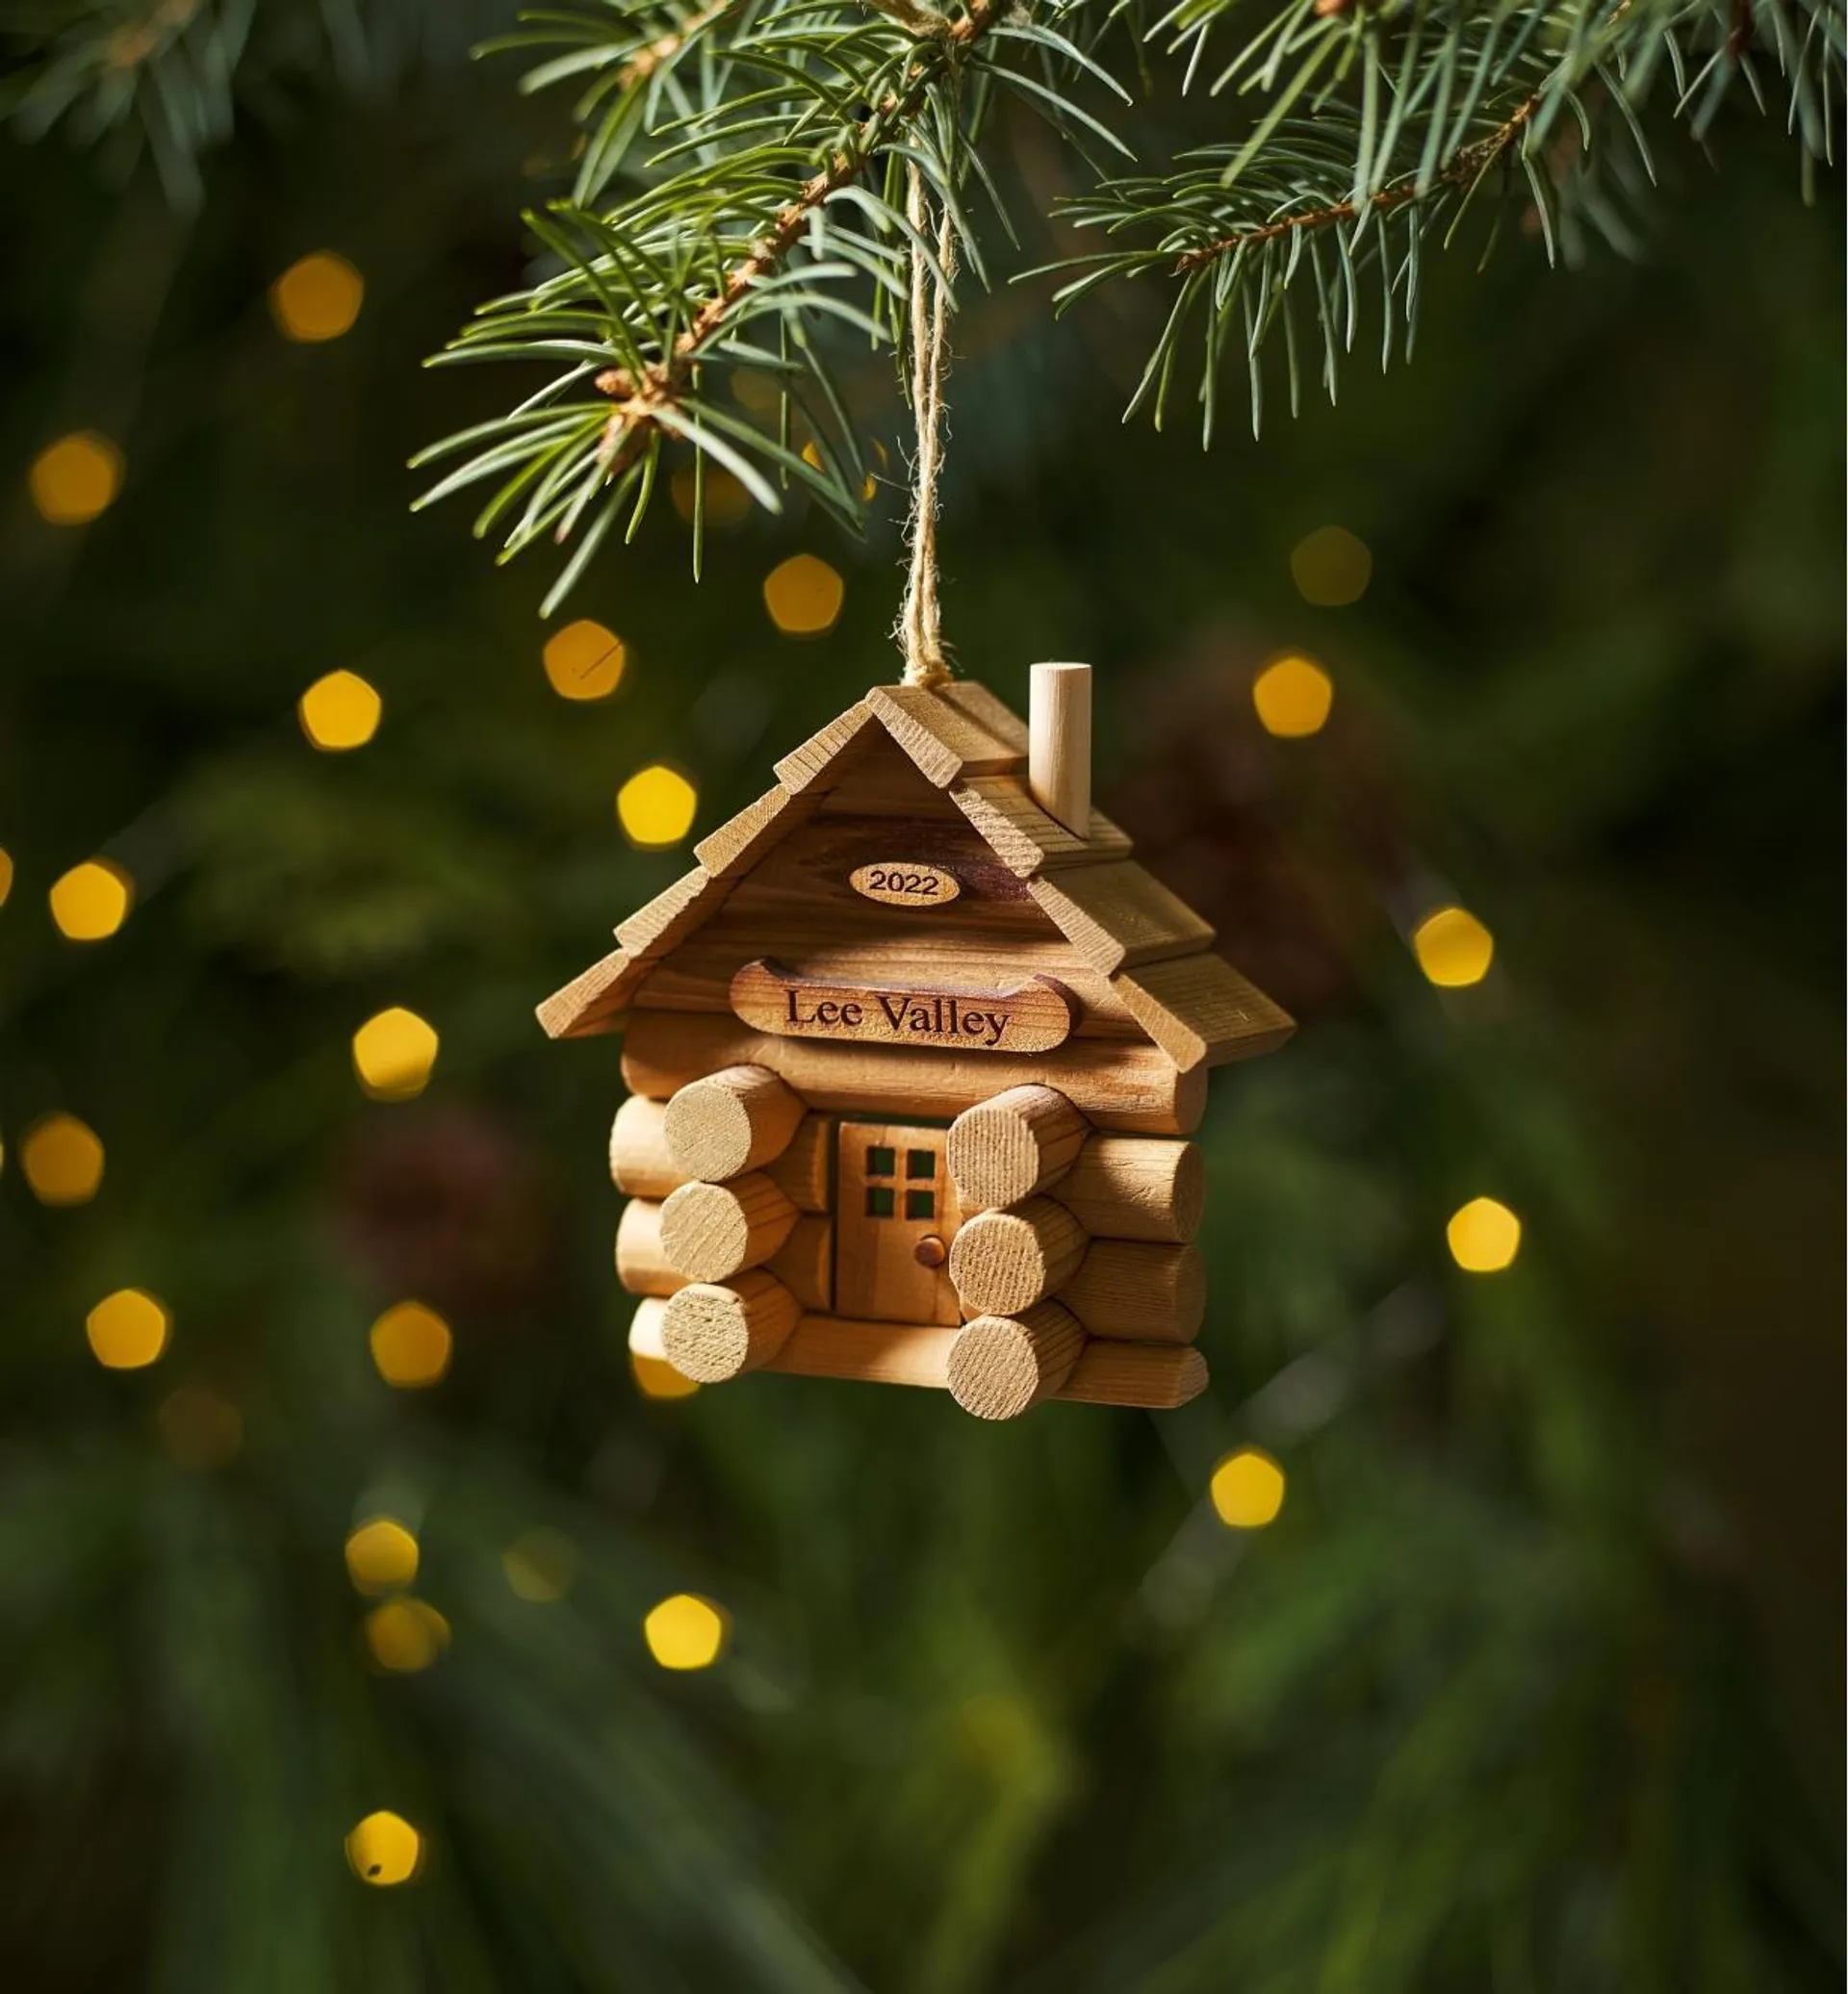 Log Cabin and Barn Ornament Kits